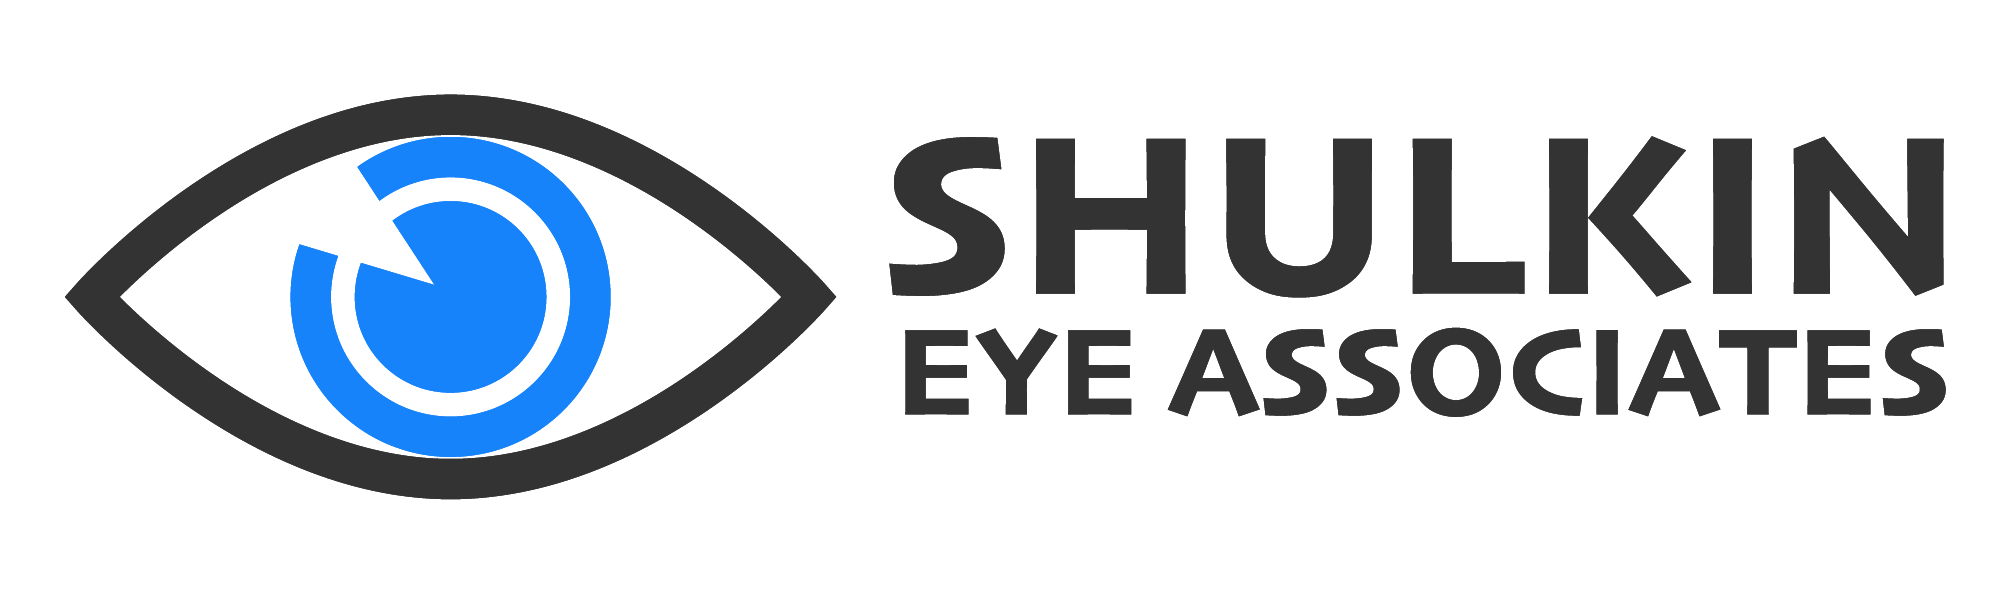 Shulkin Eye Associates Logo